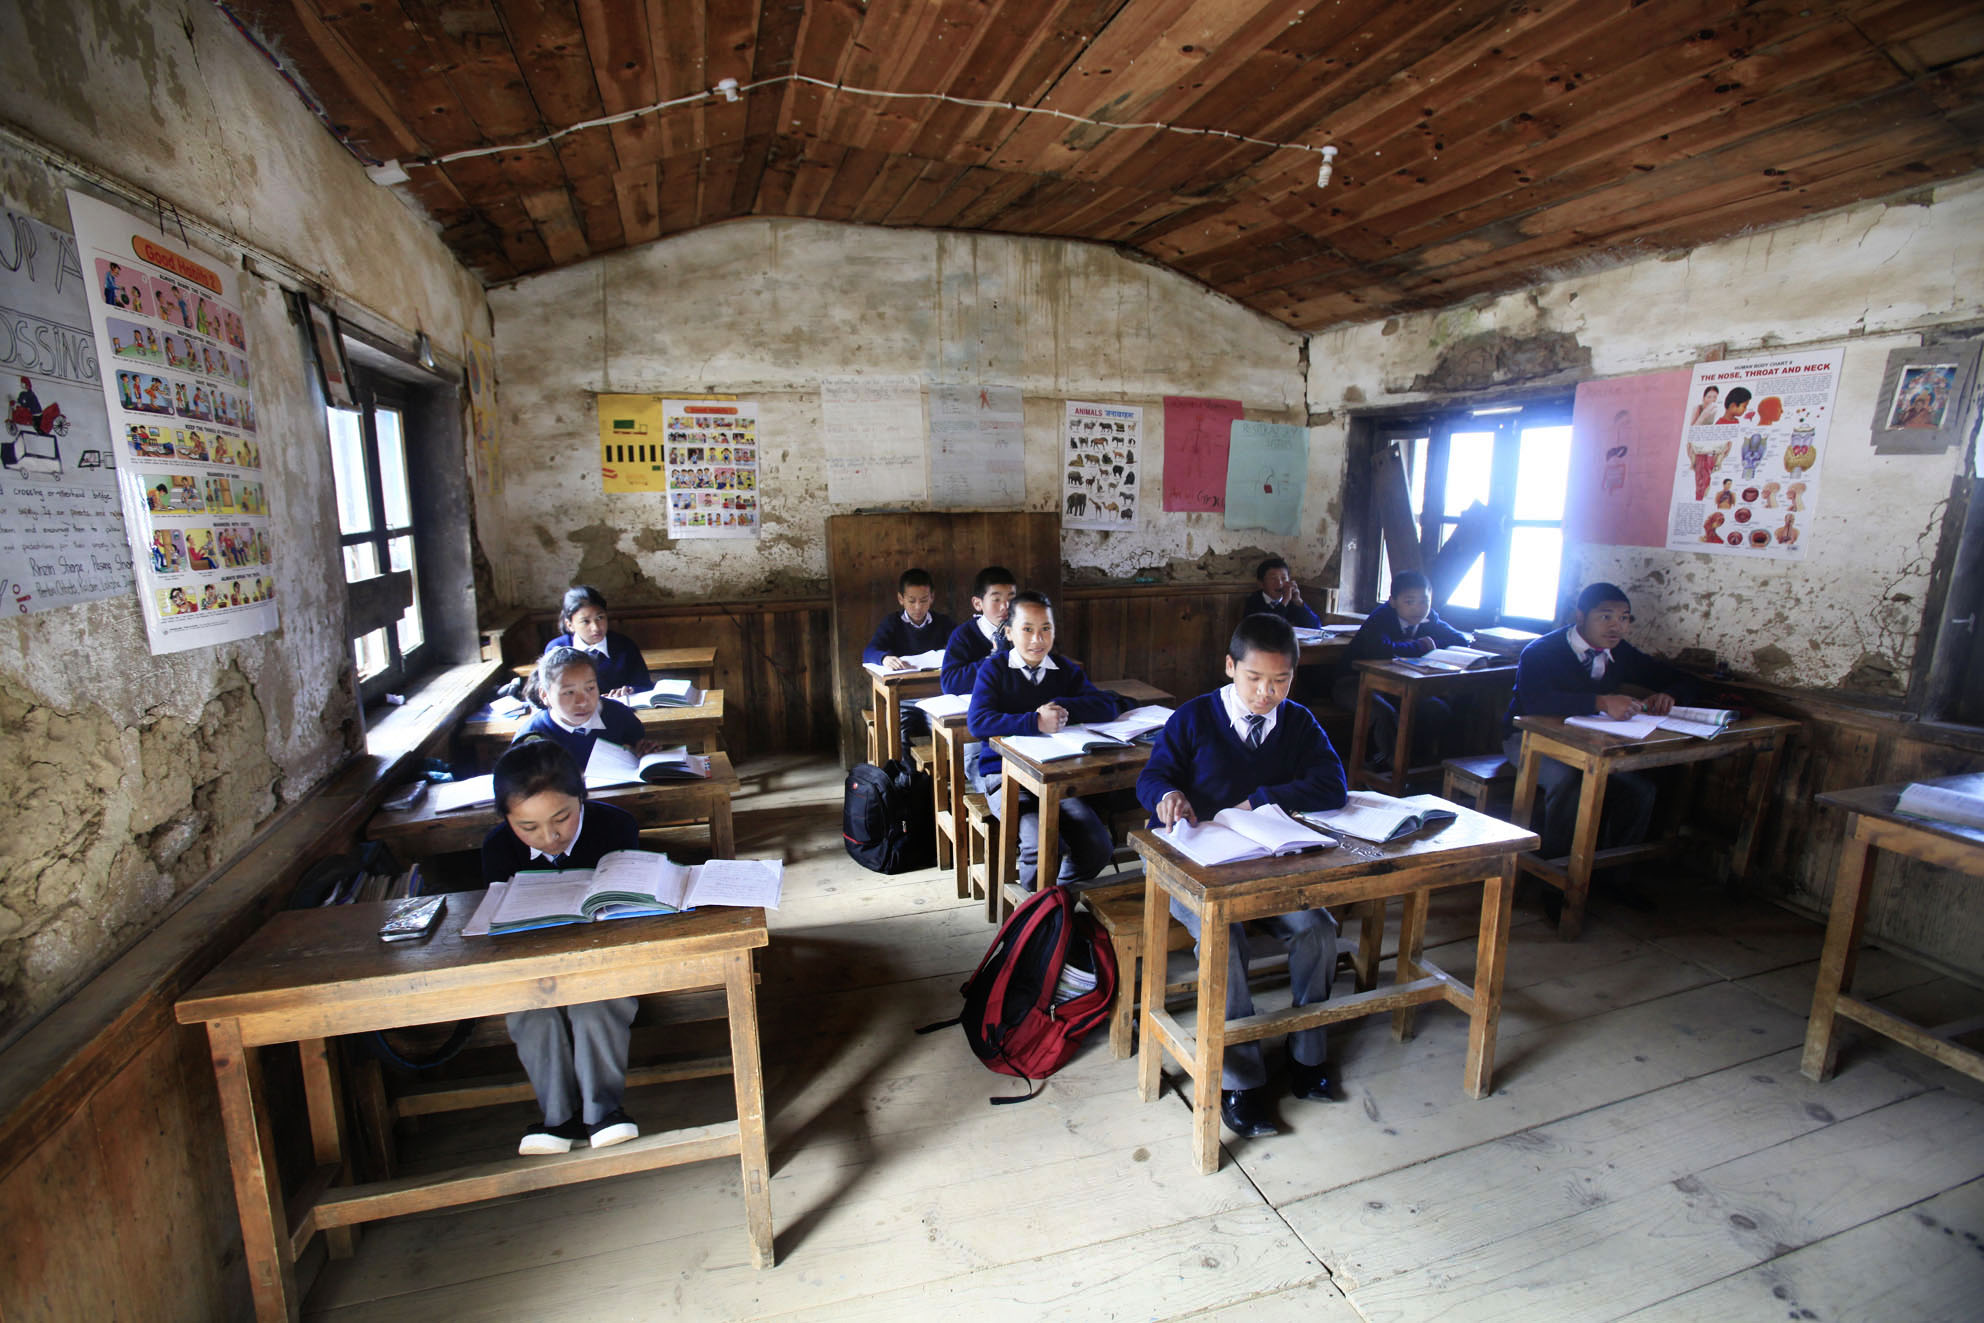 Reportage | Losan Piatti - Fotografo Italia_Nepal 2015_Mount Everest School Class